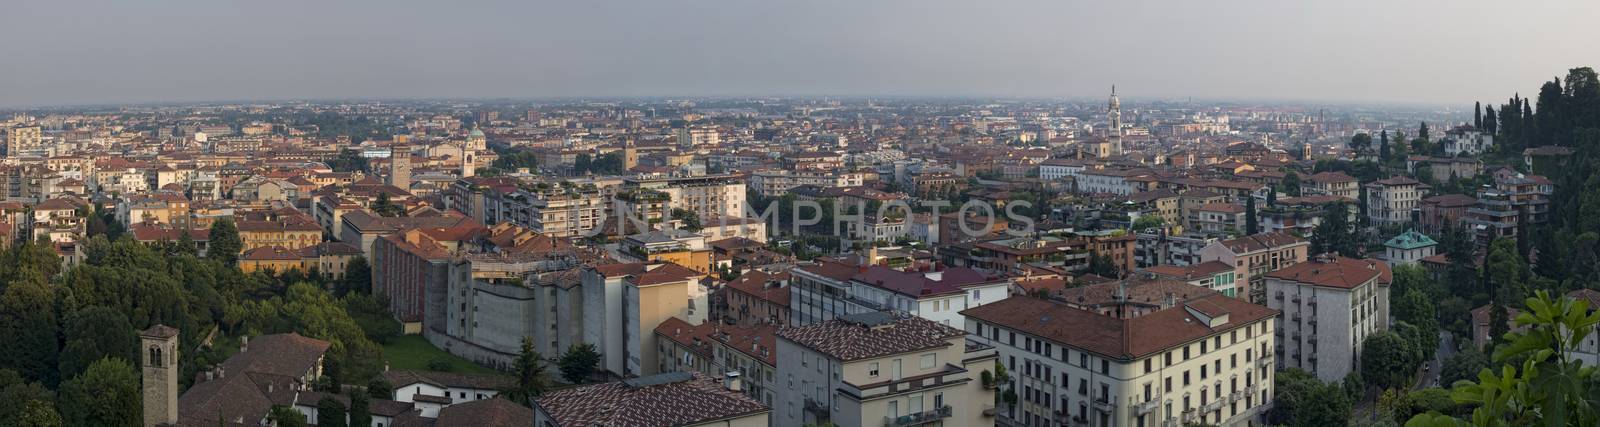 Bergamo city by johny007pan